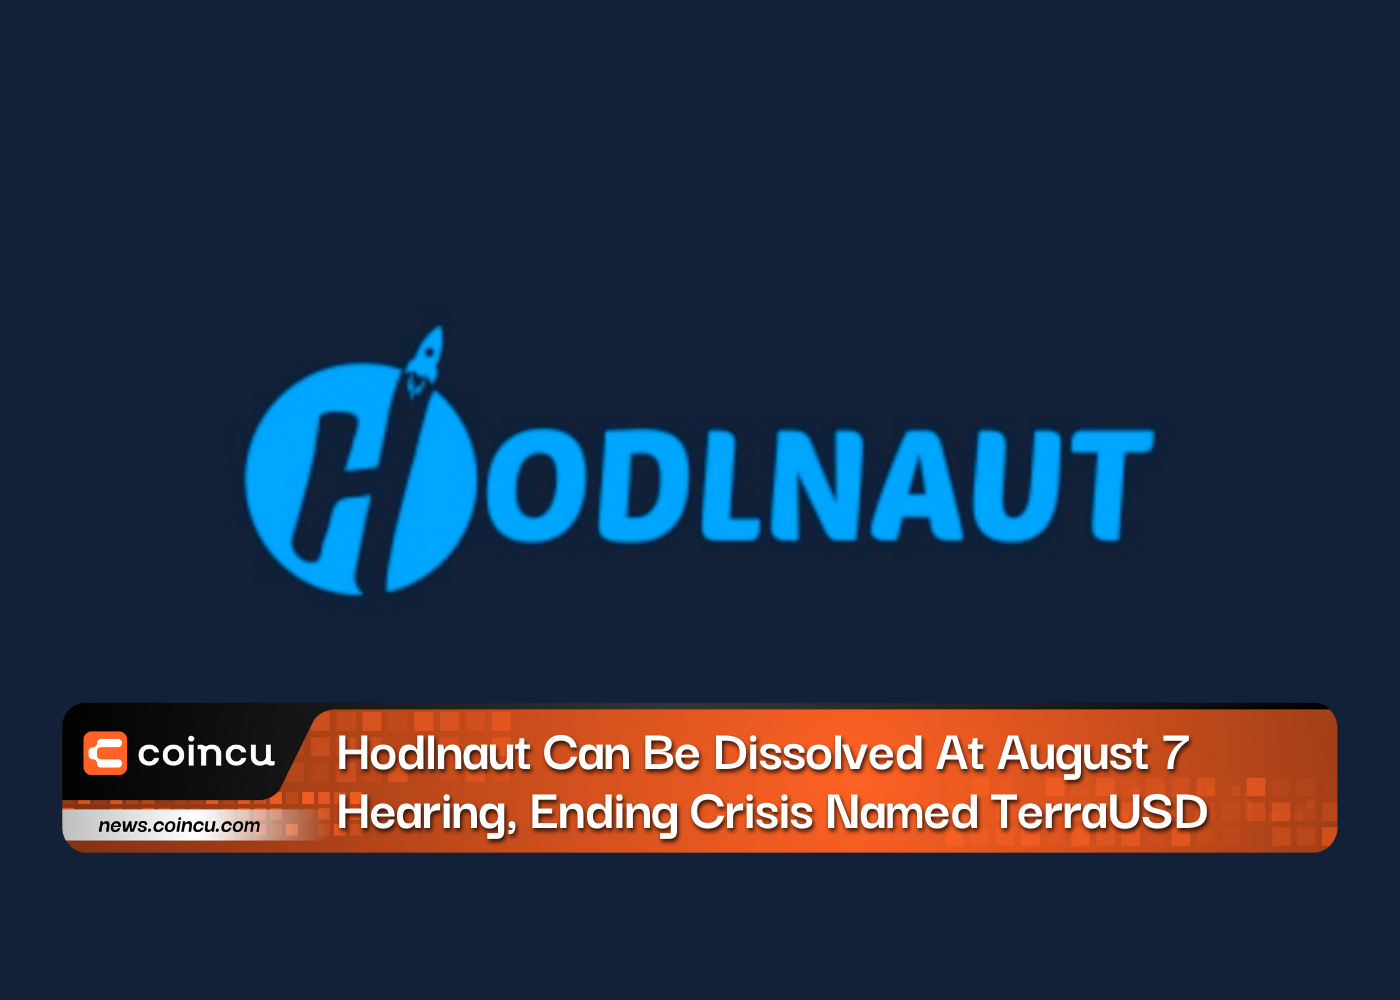 Hodlnaut peut être dissous lors de l'audience du 7 août, mettant fin à la crise nommée TerraUSD